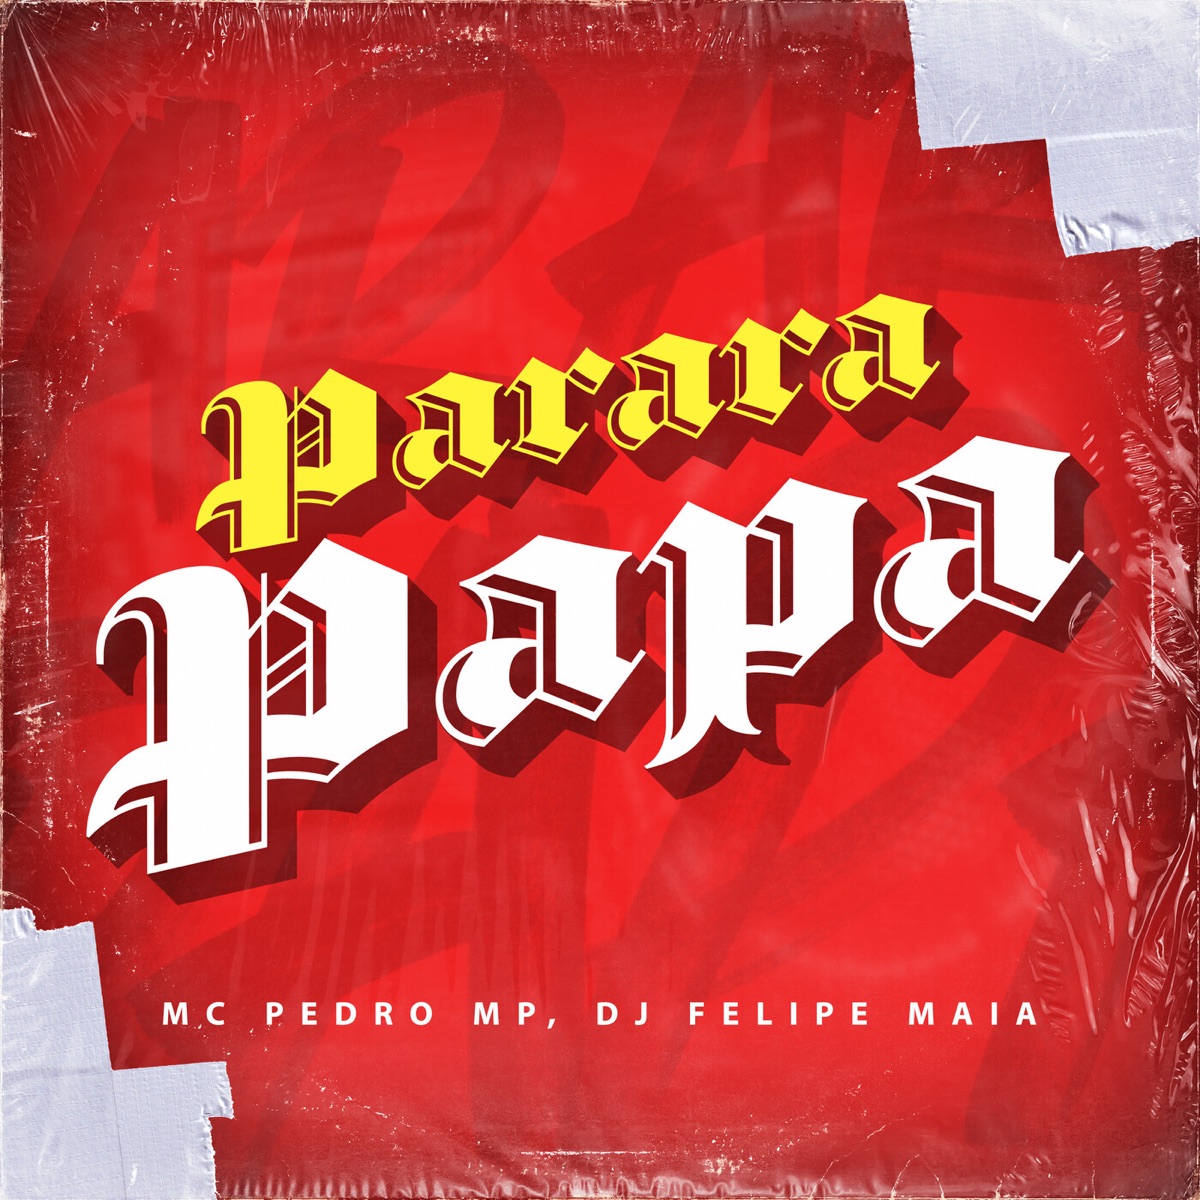 Parara Papa Parara Papa Parara Papa - Single by Mc Pedro Mp & Dj Felipe Maia on Apple Music